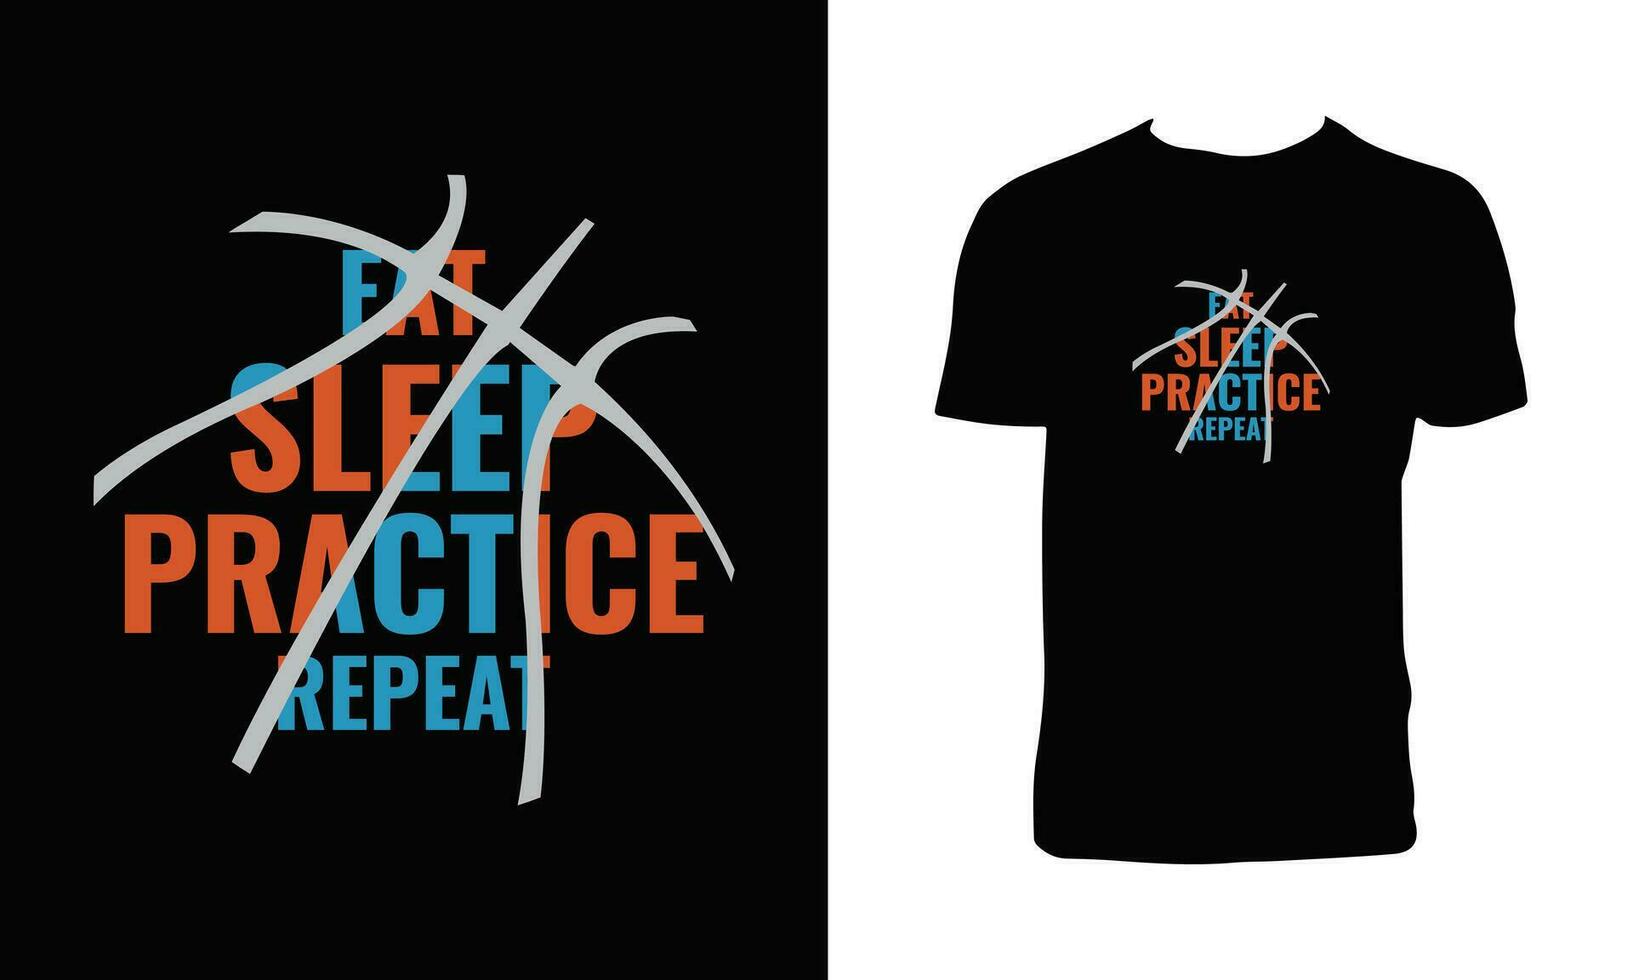 baloncesto competencia t camisa diseño. vector